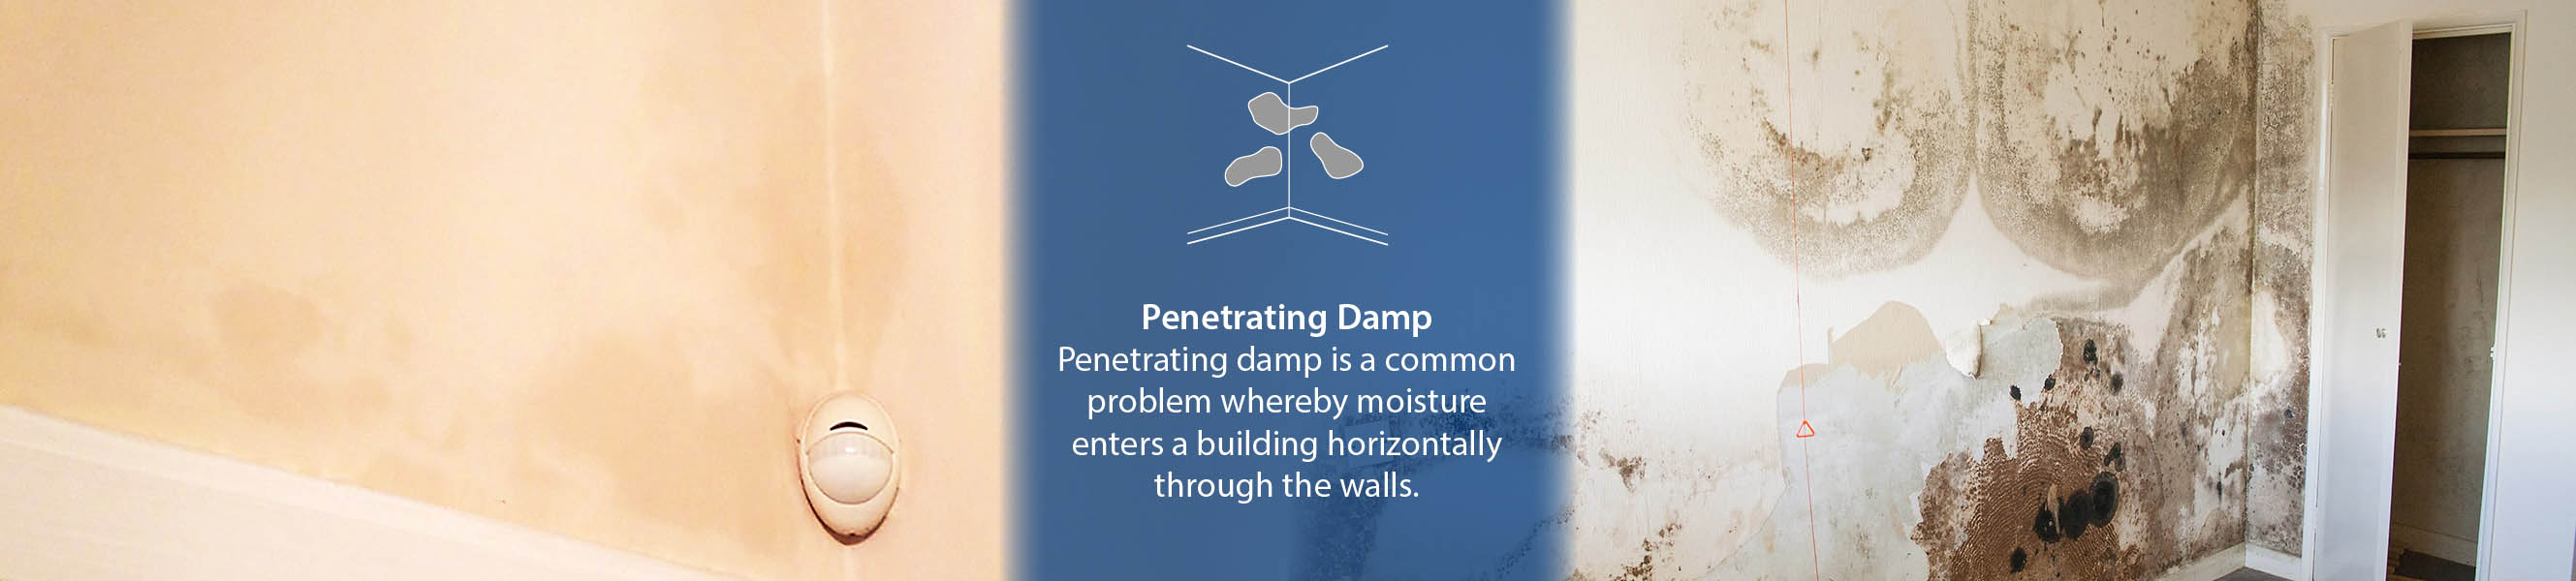 Penetrating Damp